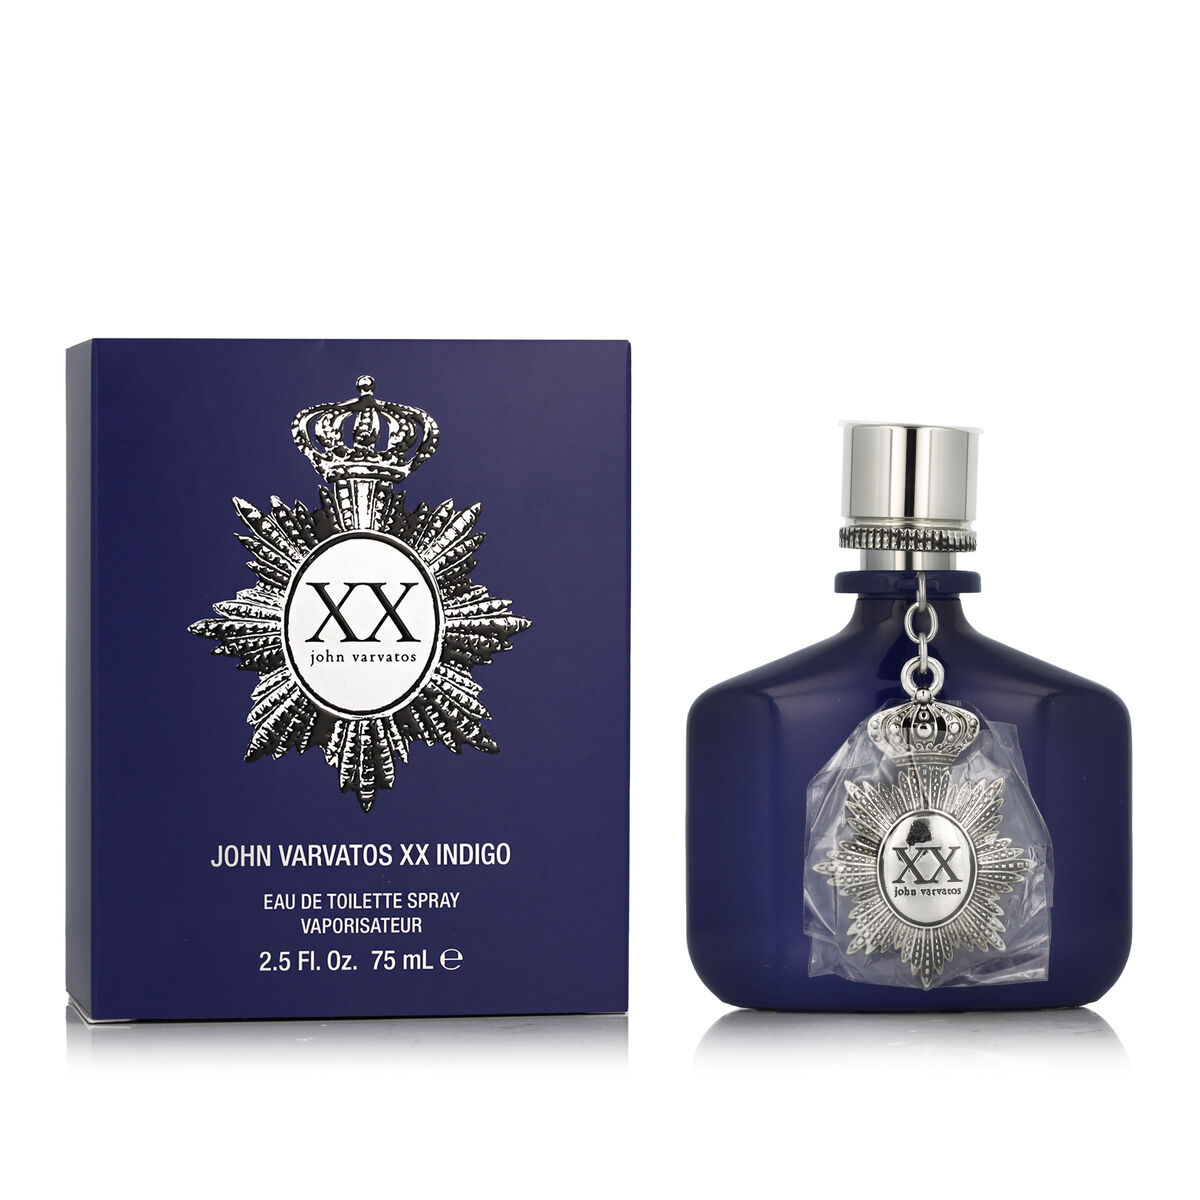 Parfum Homme John Varvatos EDT Xx Indigo 75 ml